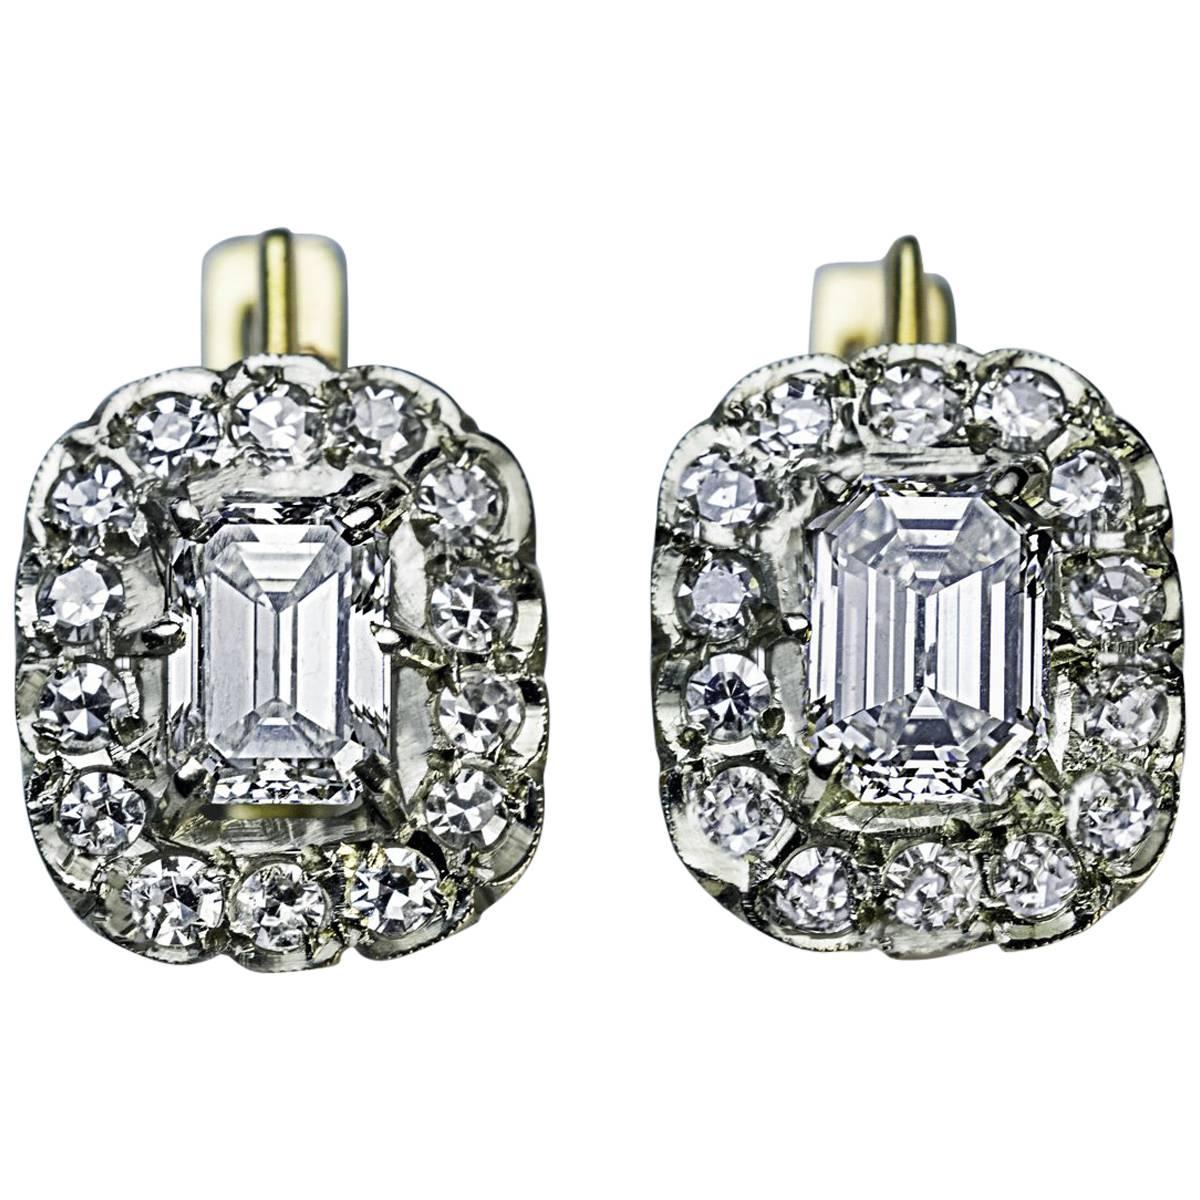 Russian Emerald Cut Diamond Cluster Earrings